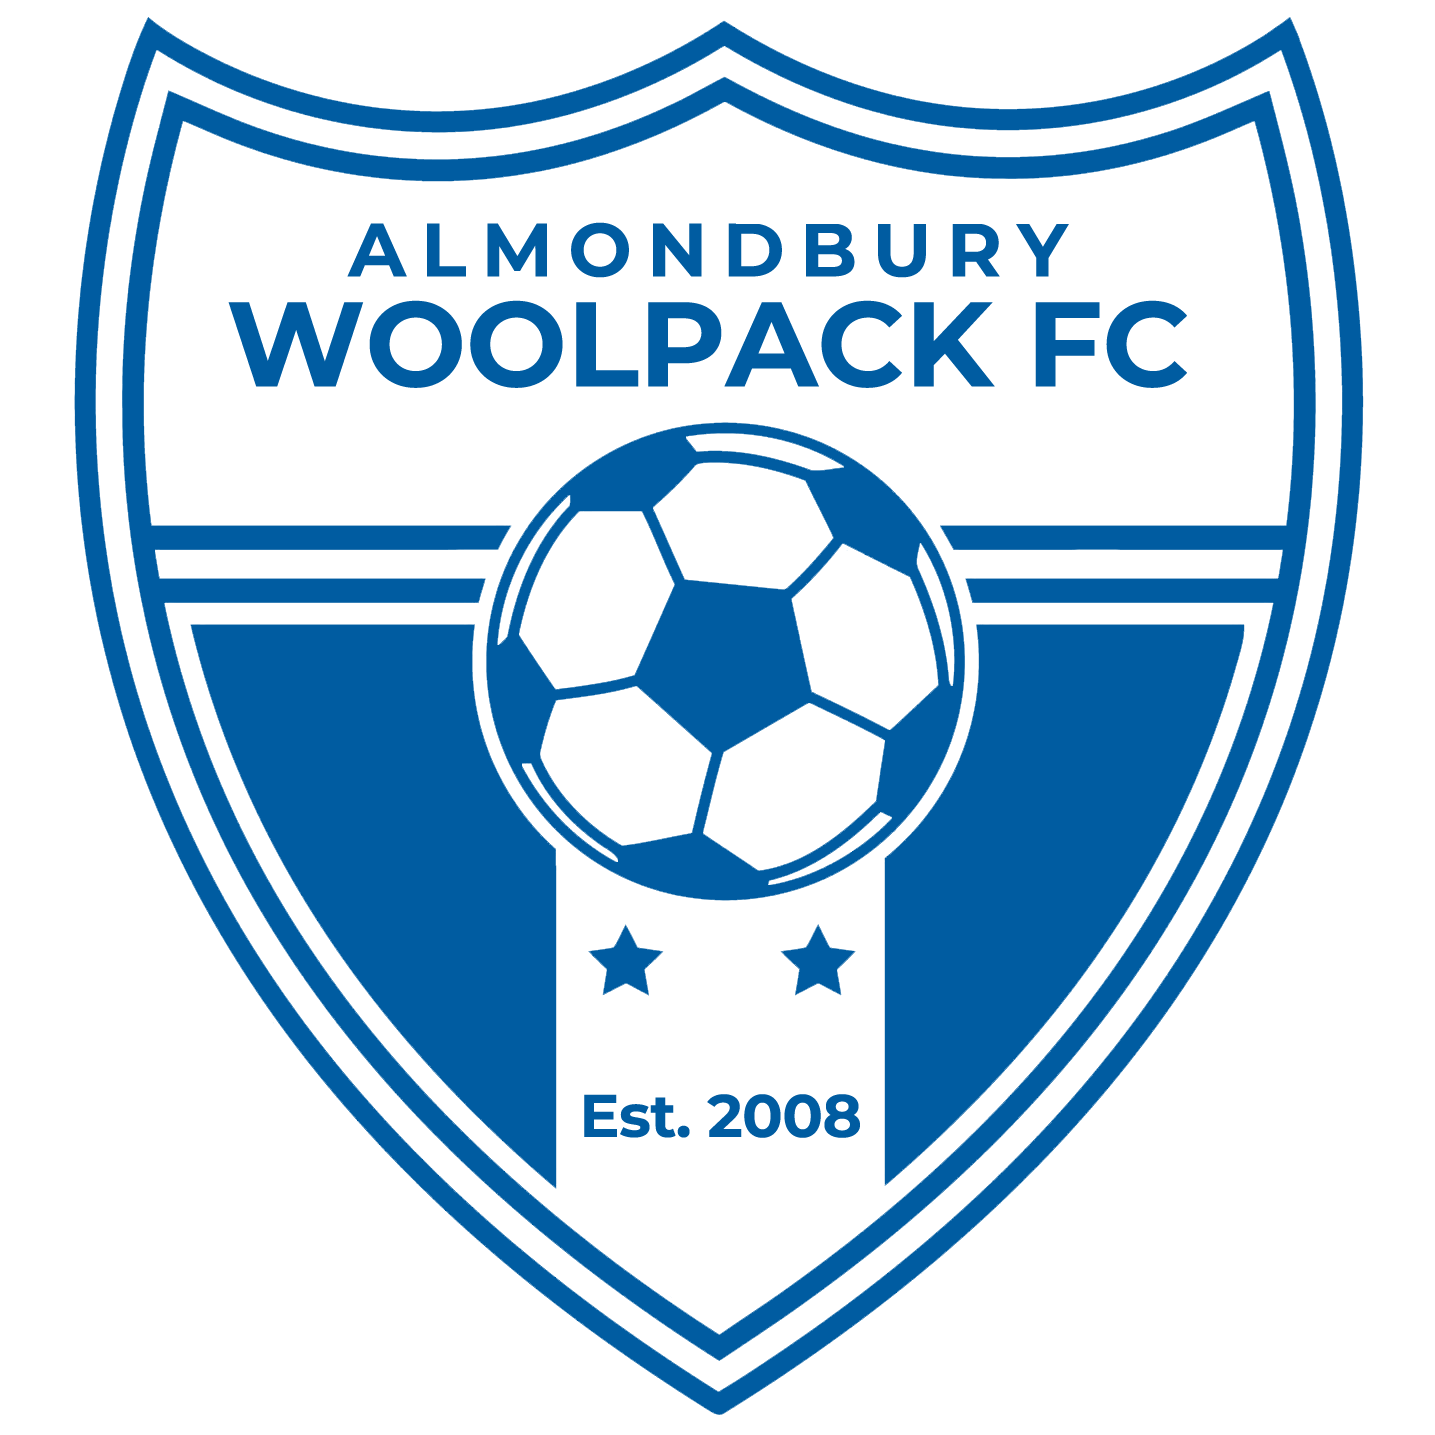 Woolpack FC